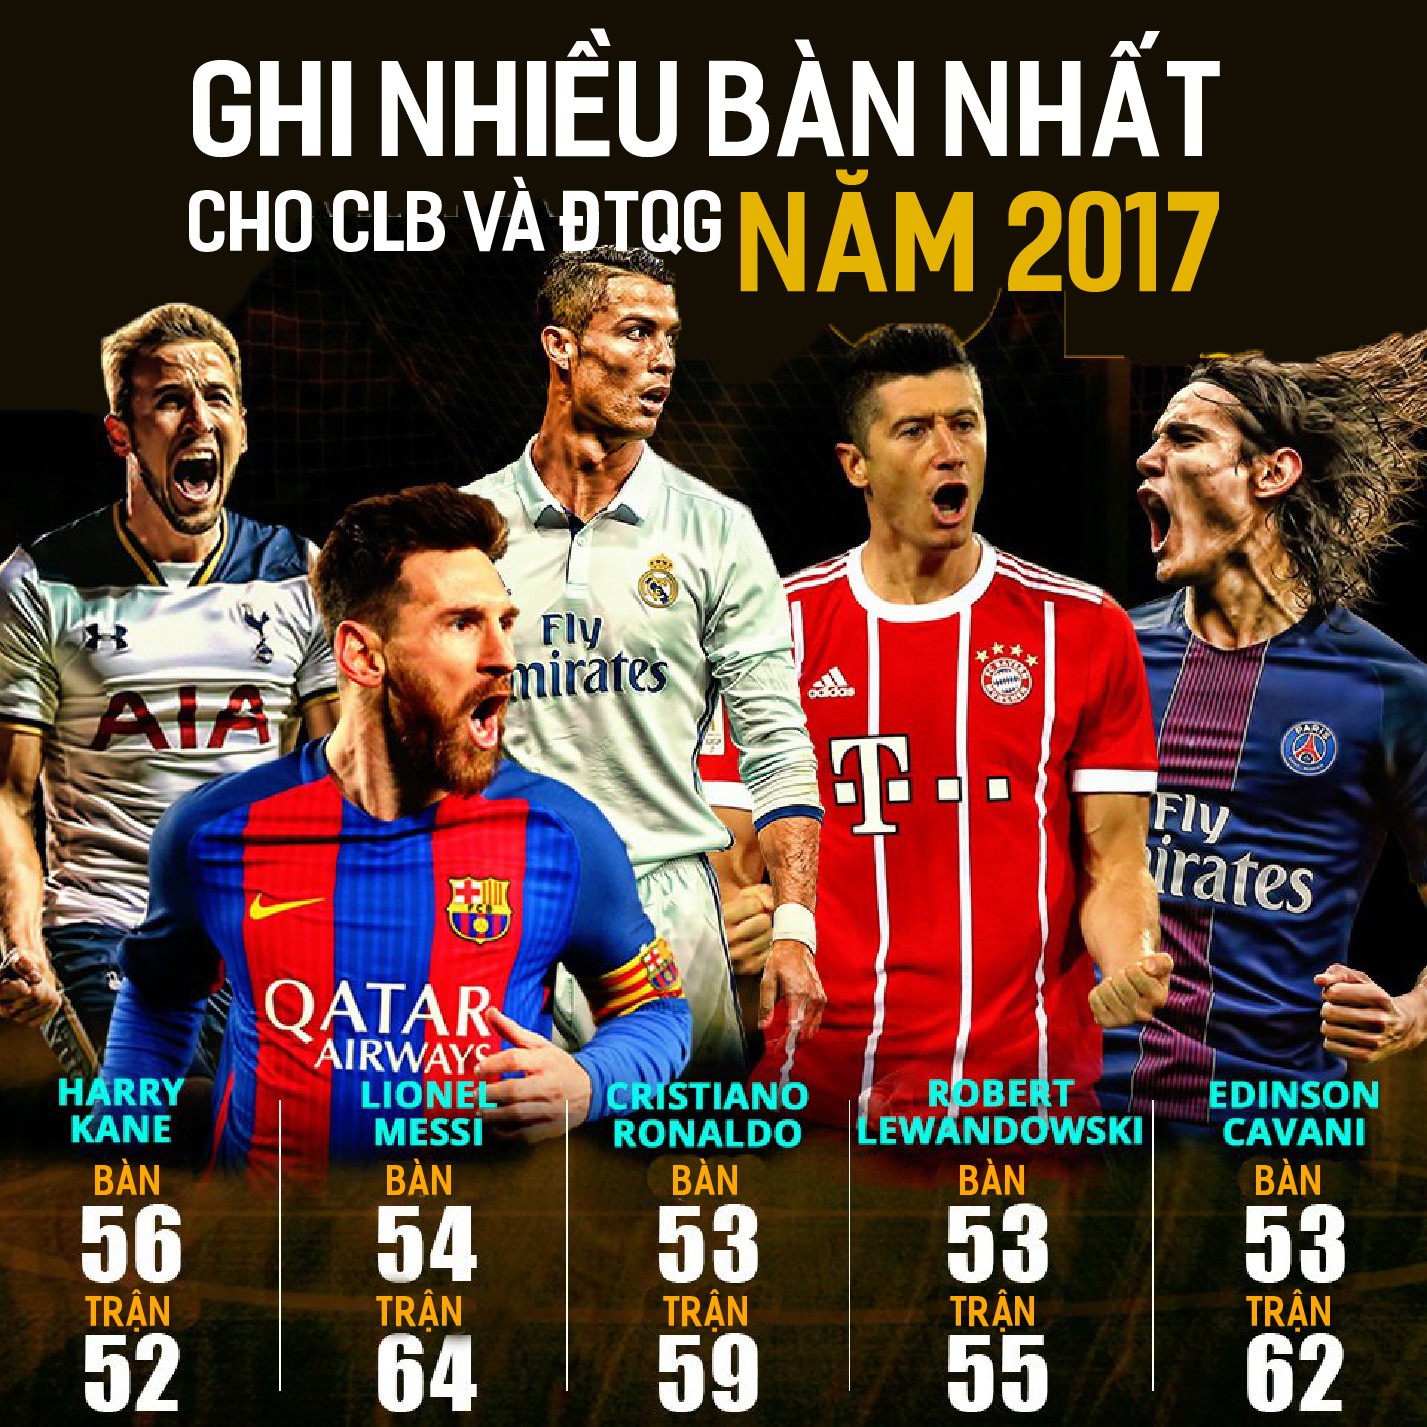 Hình ảnh: Ghi nhiều bàn nhất cho CLB và ĐTQG năm 2017